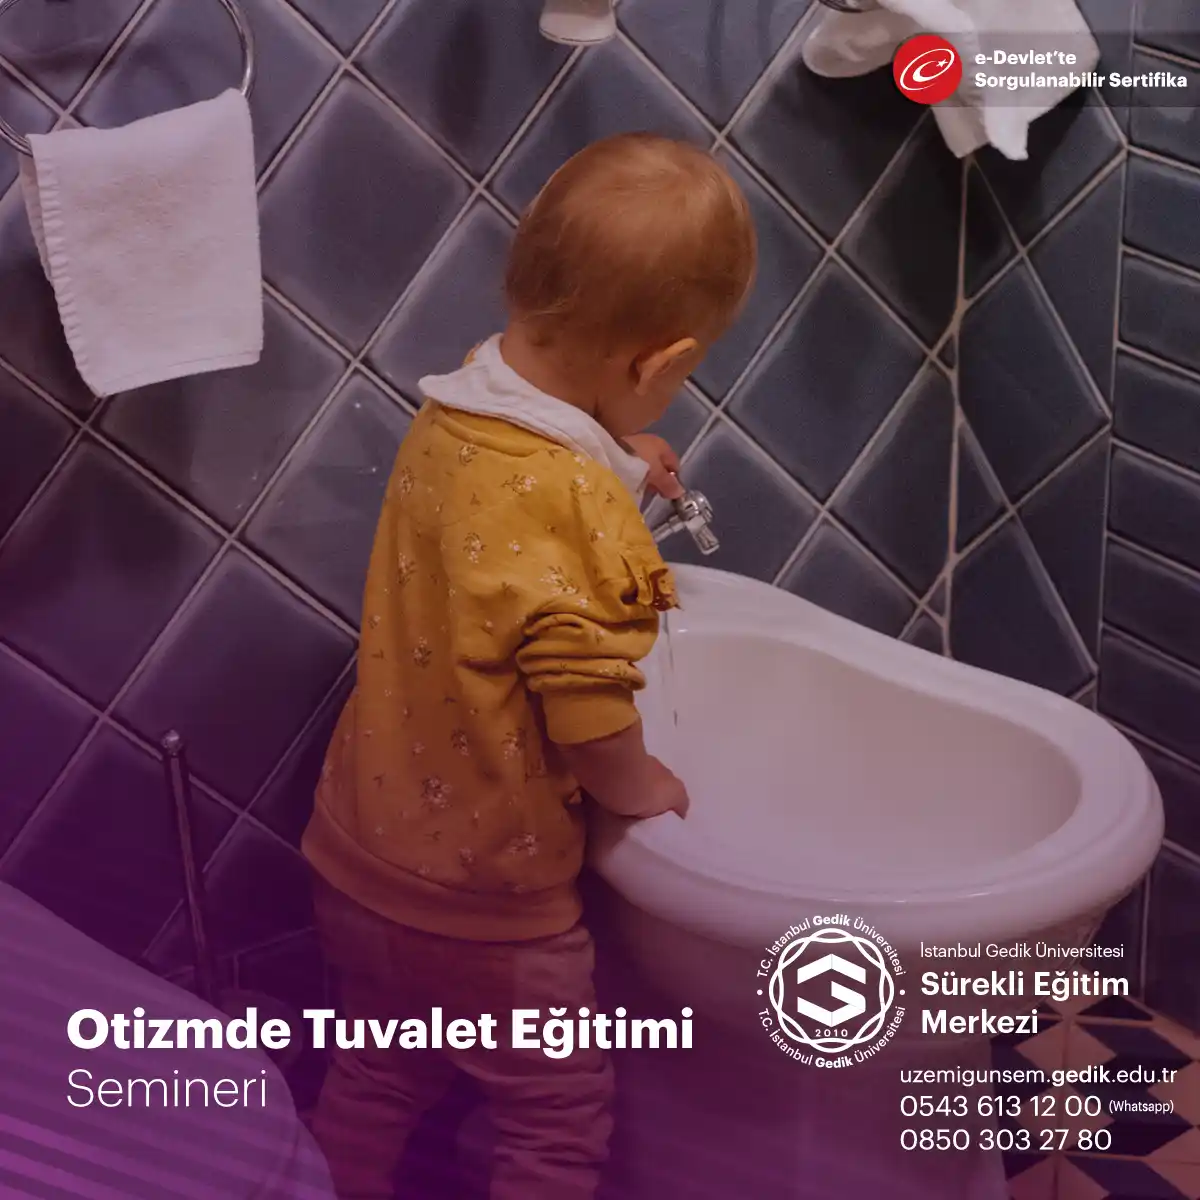 "Otizmde Tuvalet Eğitimi Semineri," otizm spektrum bozukluğu (ASD) tanısı almış bireylere tuvalet eğitimi verme konusunu ele alan bir eğitimdir.